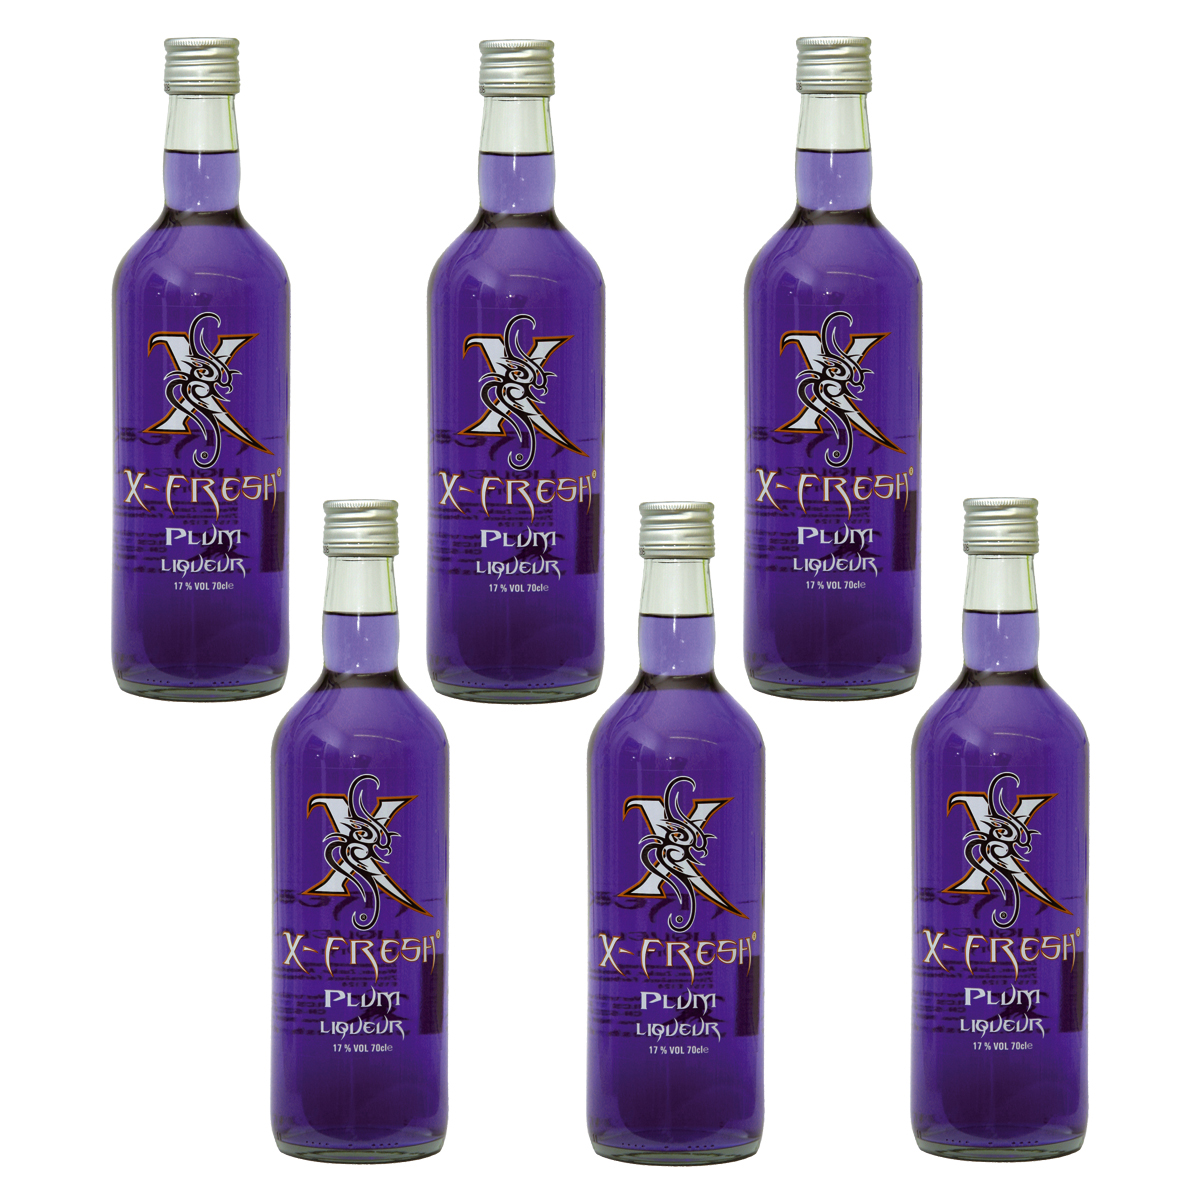 X-Fresh Vodka Plum 6 x 0.7 Ltr. (6er Box) 17 Vol. / Verkauf nur ab 18 Jahren / Kein Export 